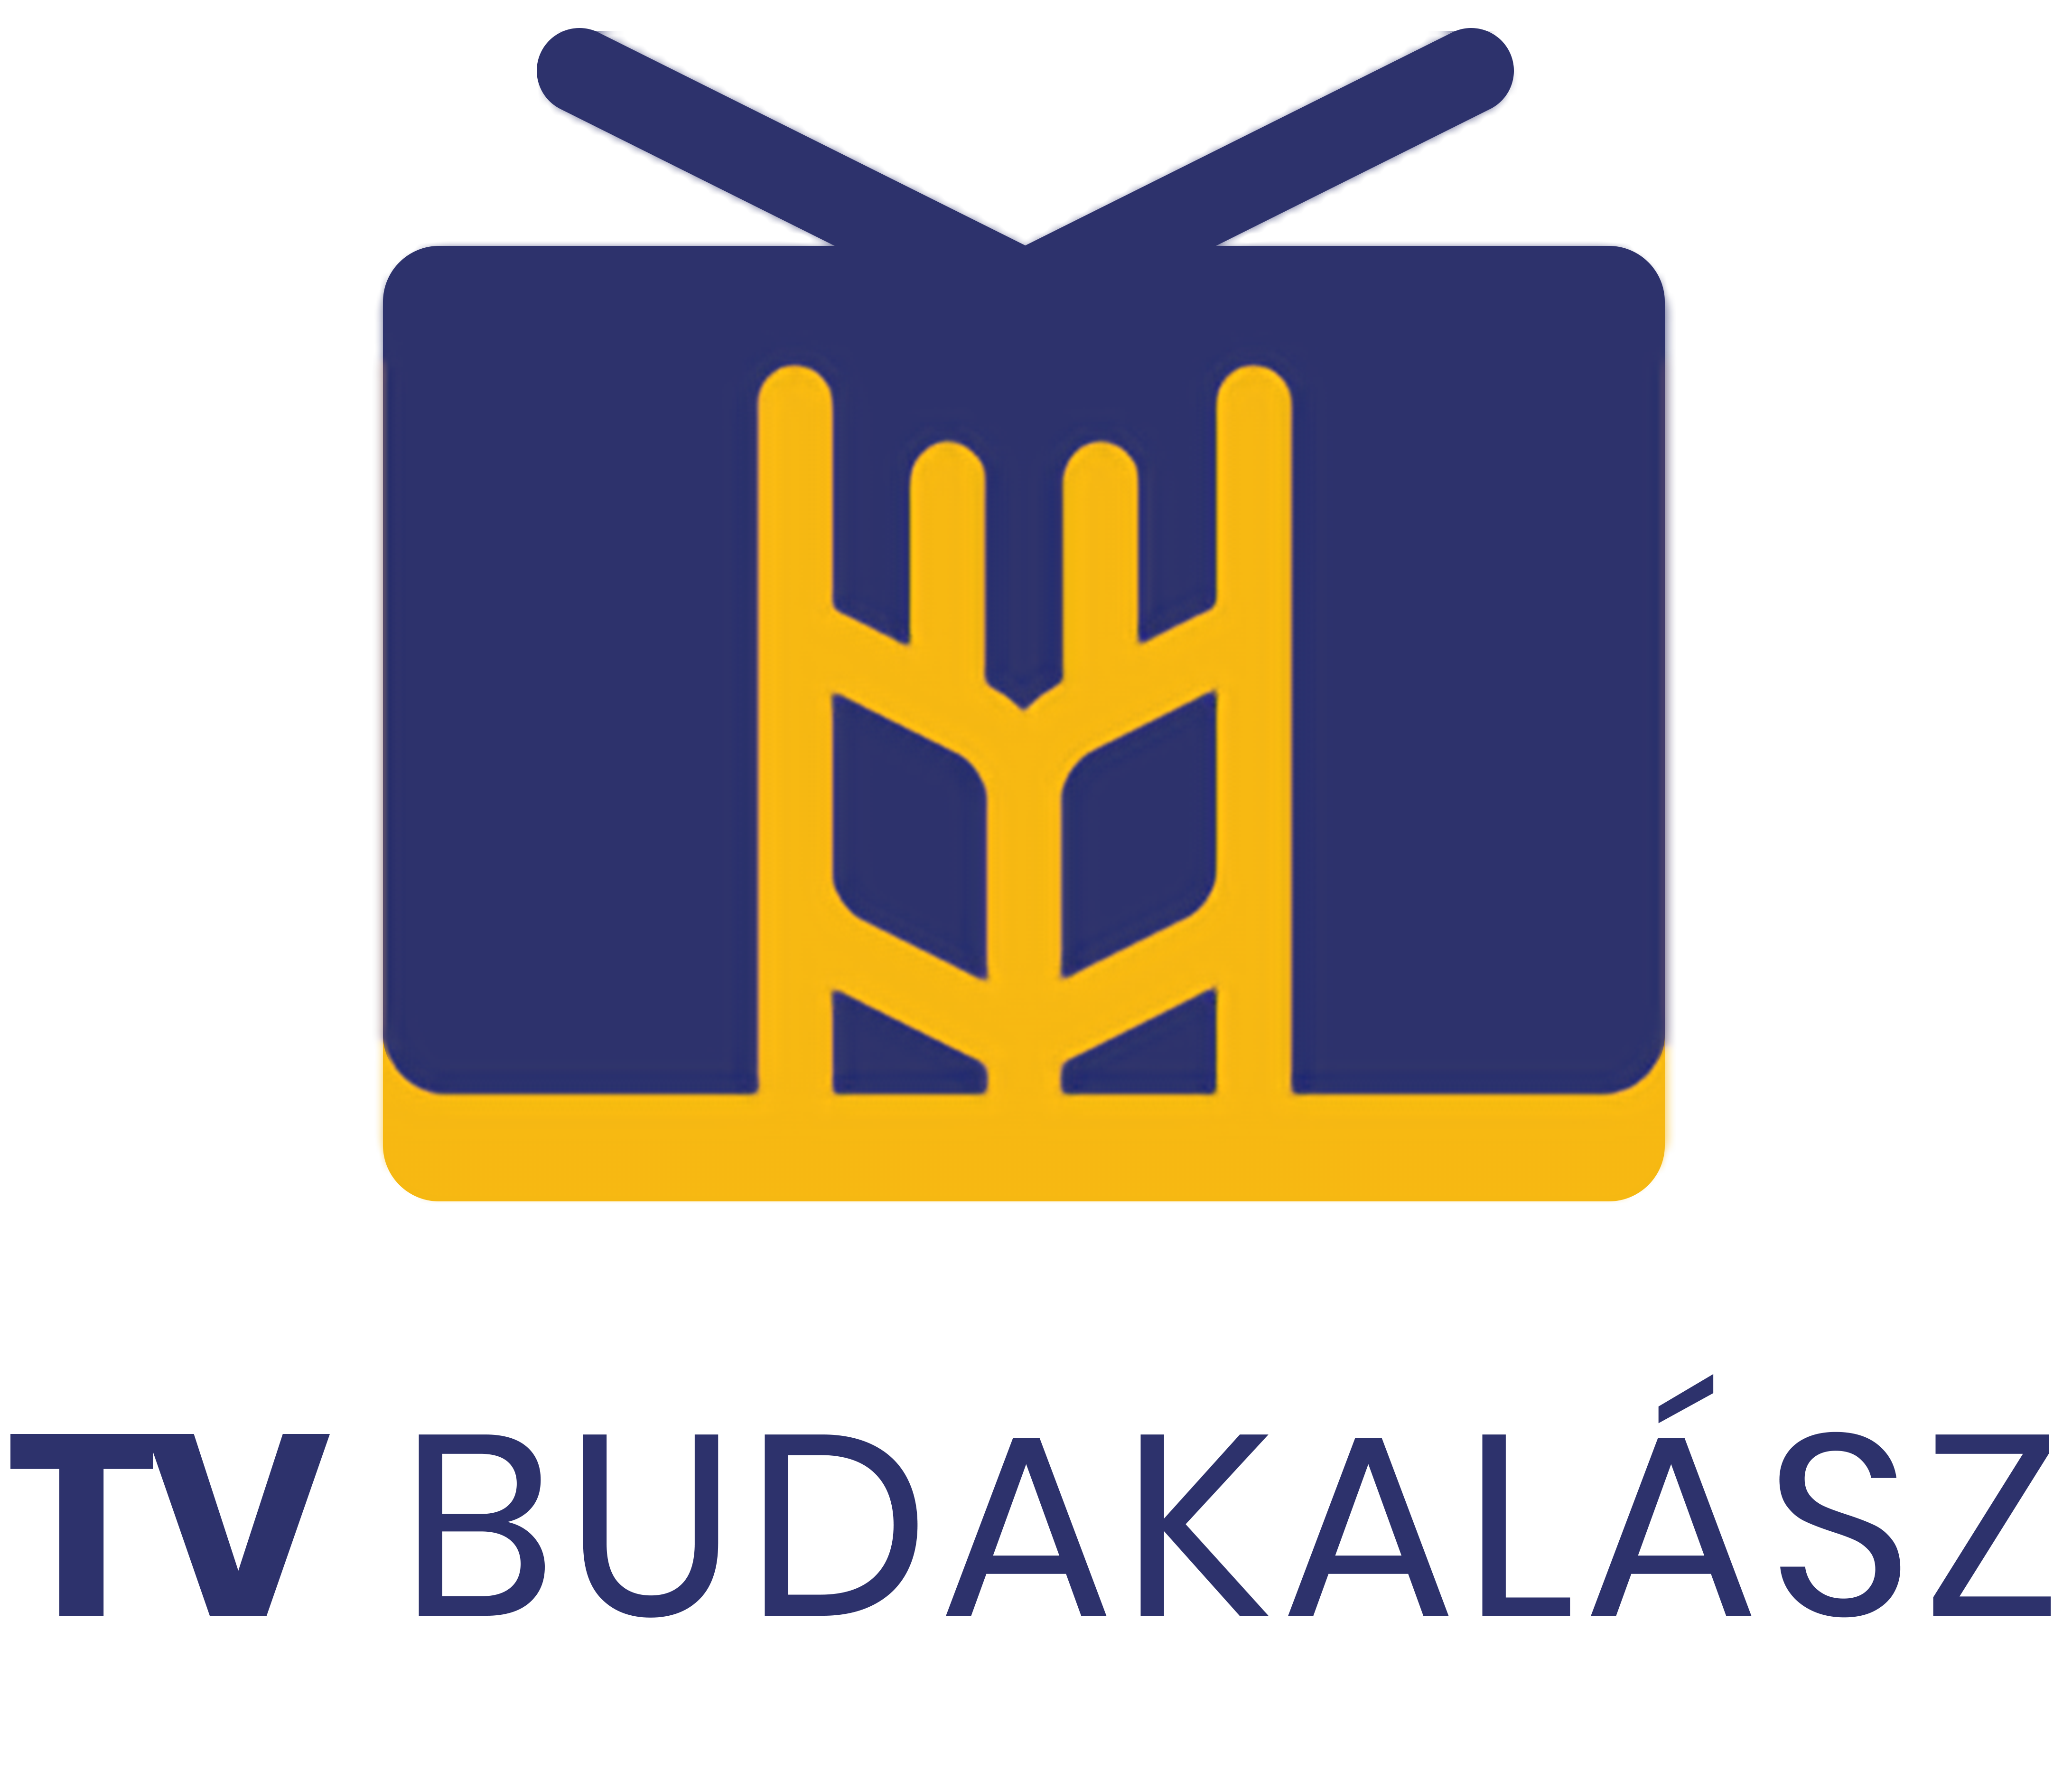 Budakalász TV logo